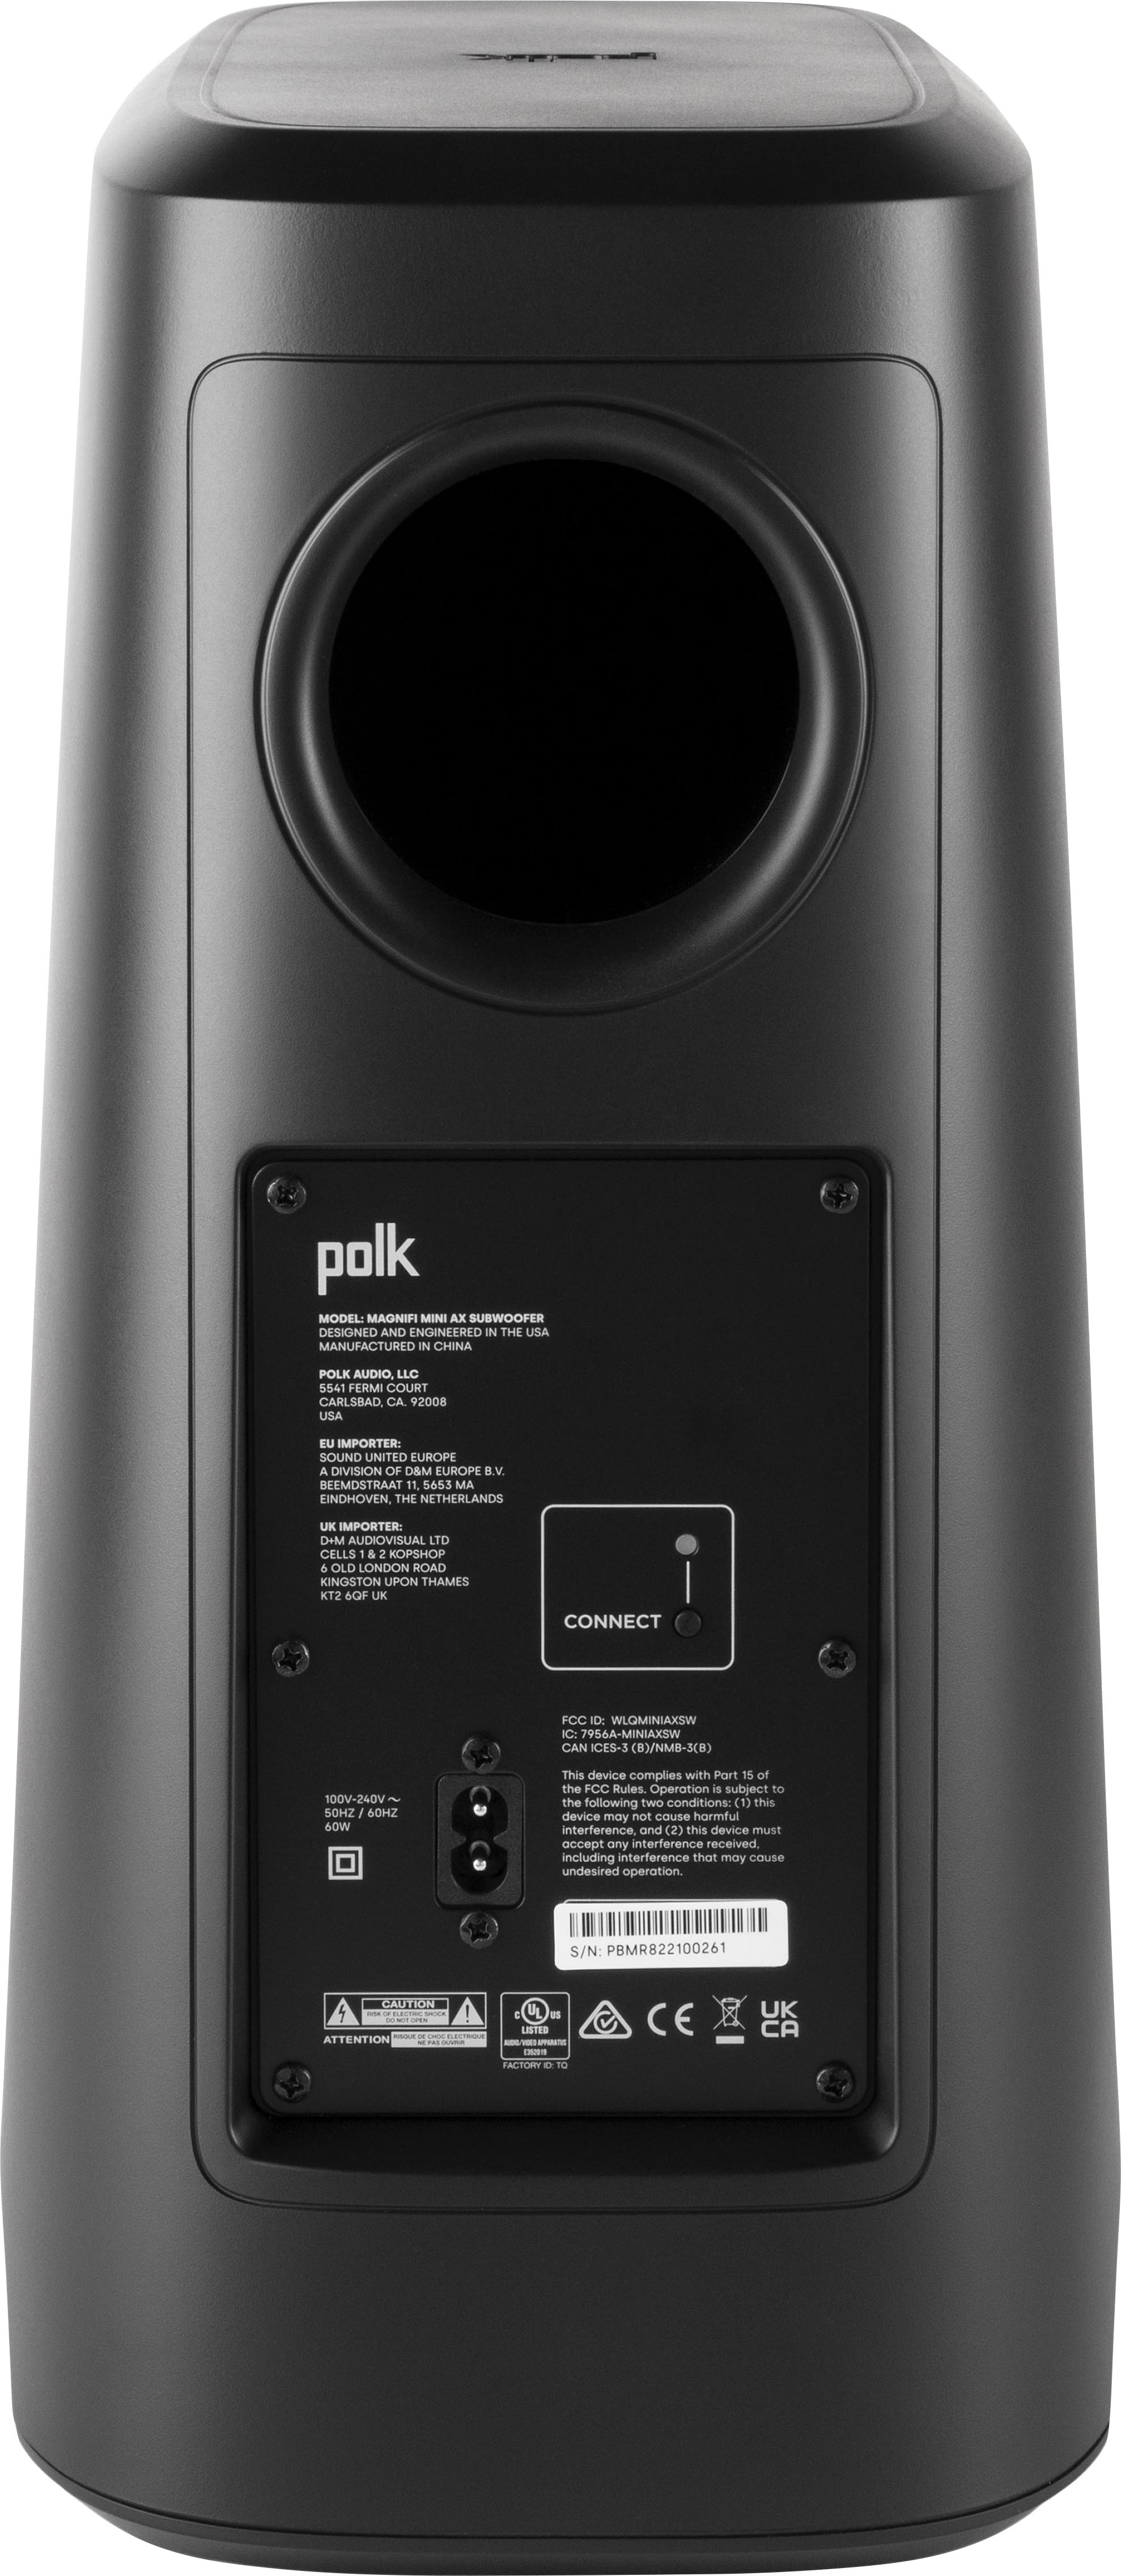 Polk Audio Mini AX Soundbar with Wireless Subwoofer Black - Buy